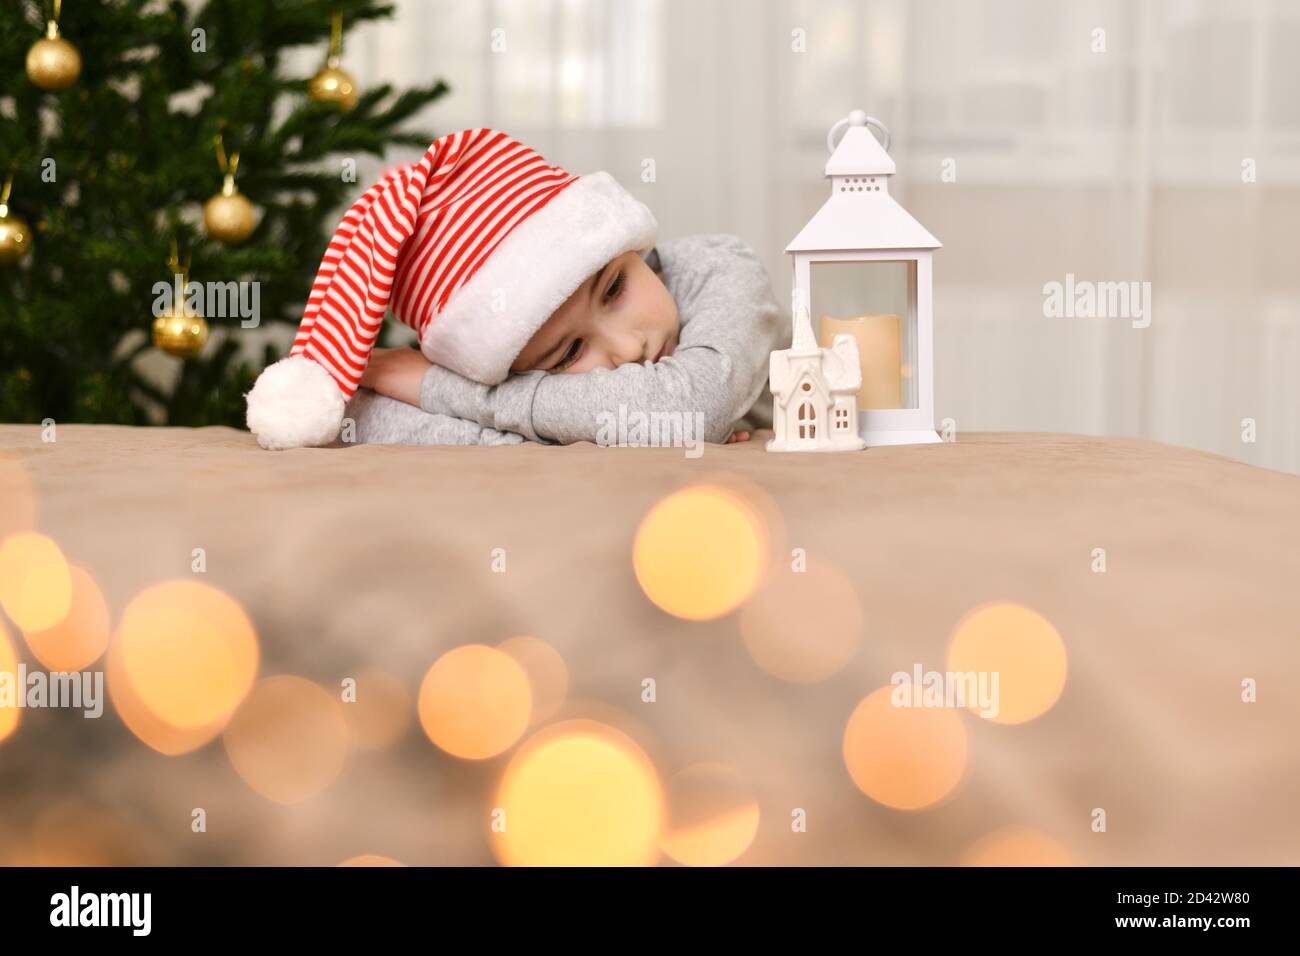 Un enfant triste dans une casquette rayée se trouve à l'arbre de Noël. Banque D'Images